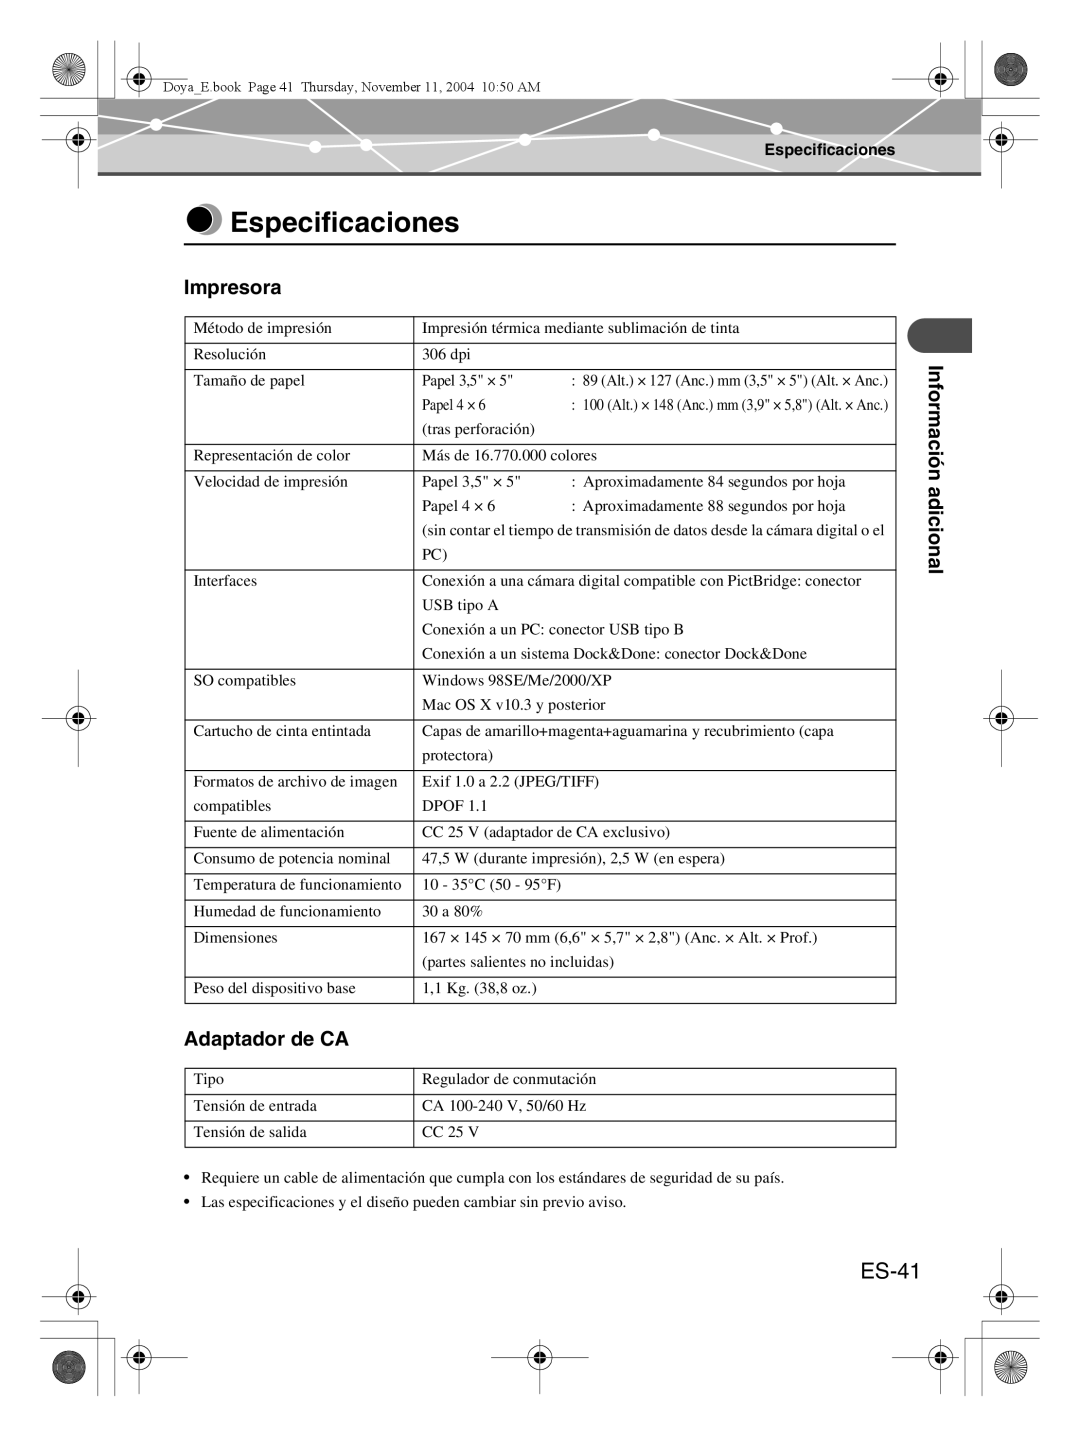 Olympus P-S100 user manual Especificaciones, ES-41, Impresora, Adaptador de CA 